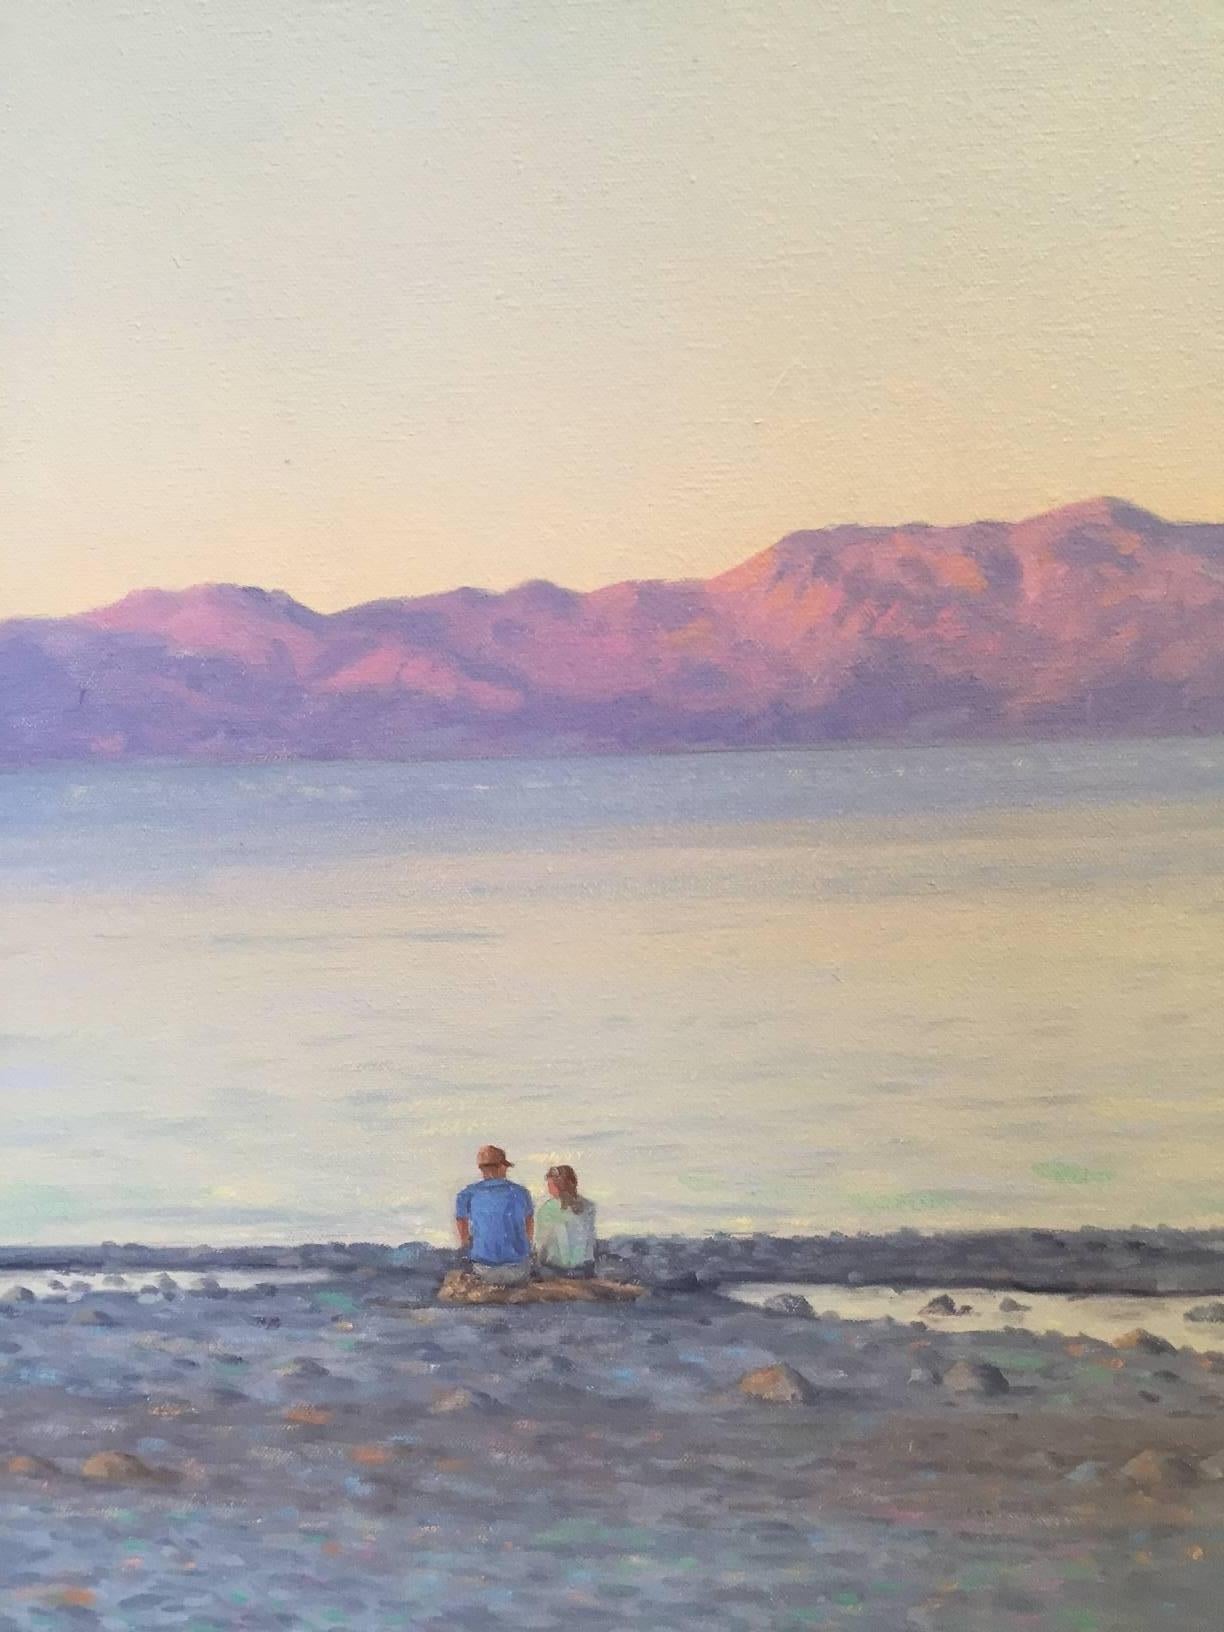 Freunde und Familie genießen den Sonnenuntergang am Lake Tahoe mit dem frühen Abendlicht und dem majestätischen Gebirgskamm in der Ferne.  Willard Dixon ist einer der besten heute lebenden amerikanischen Maler des zeitgenössischen Realismus. Der